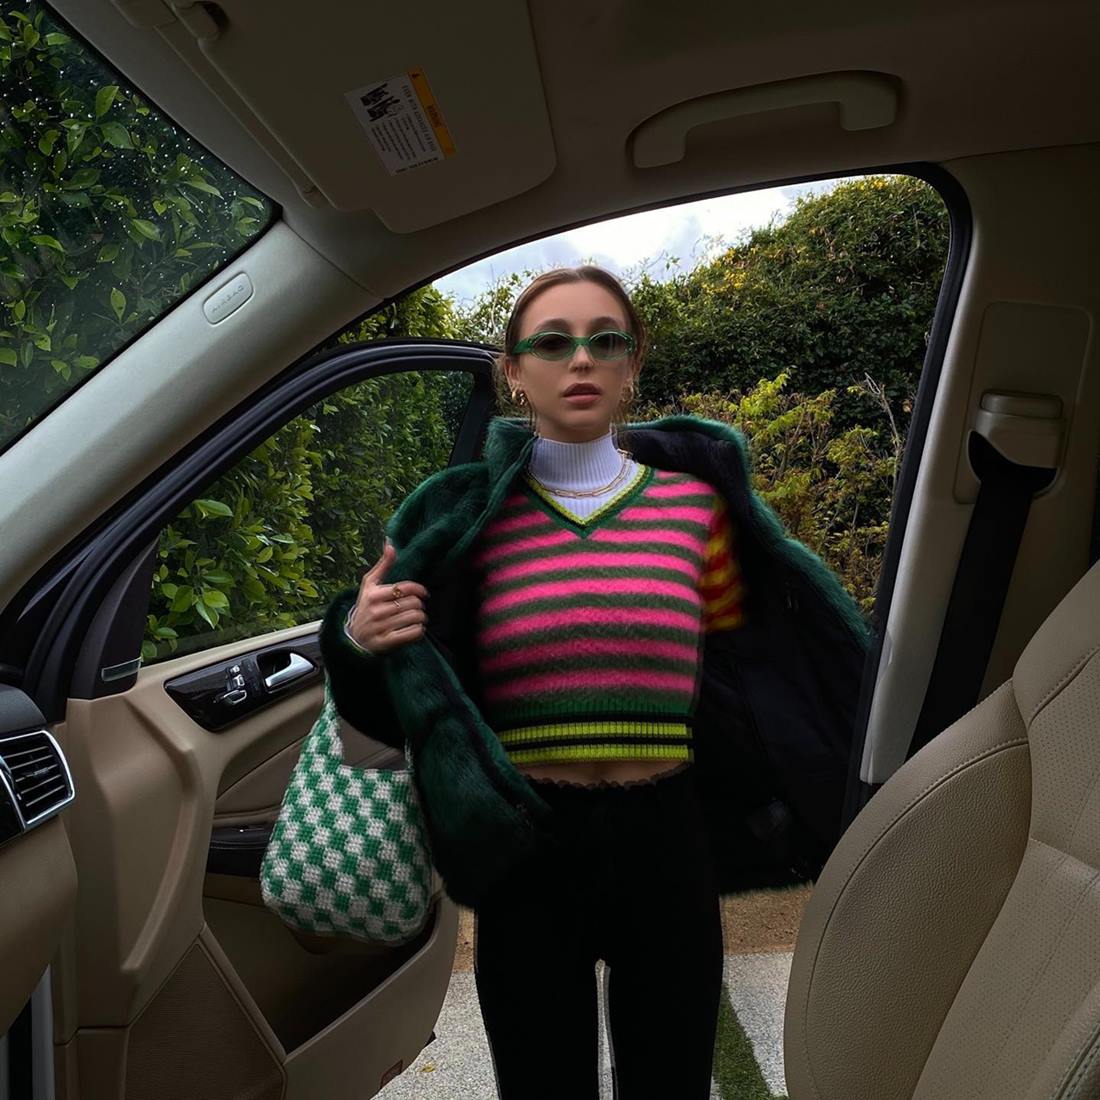 A influencer Emma Chamberlain, uma mulher branca e jovem, com cabelo loiro liso, posando para foto na porta de um carro preto. Usa uma regata de gola alta branca, um colete listrado colorido, um casaco verde escuro e um óculos escuro verde.